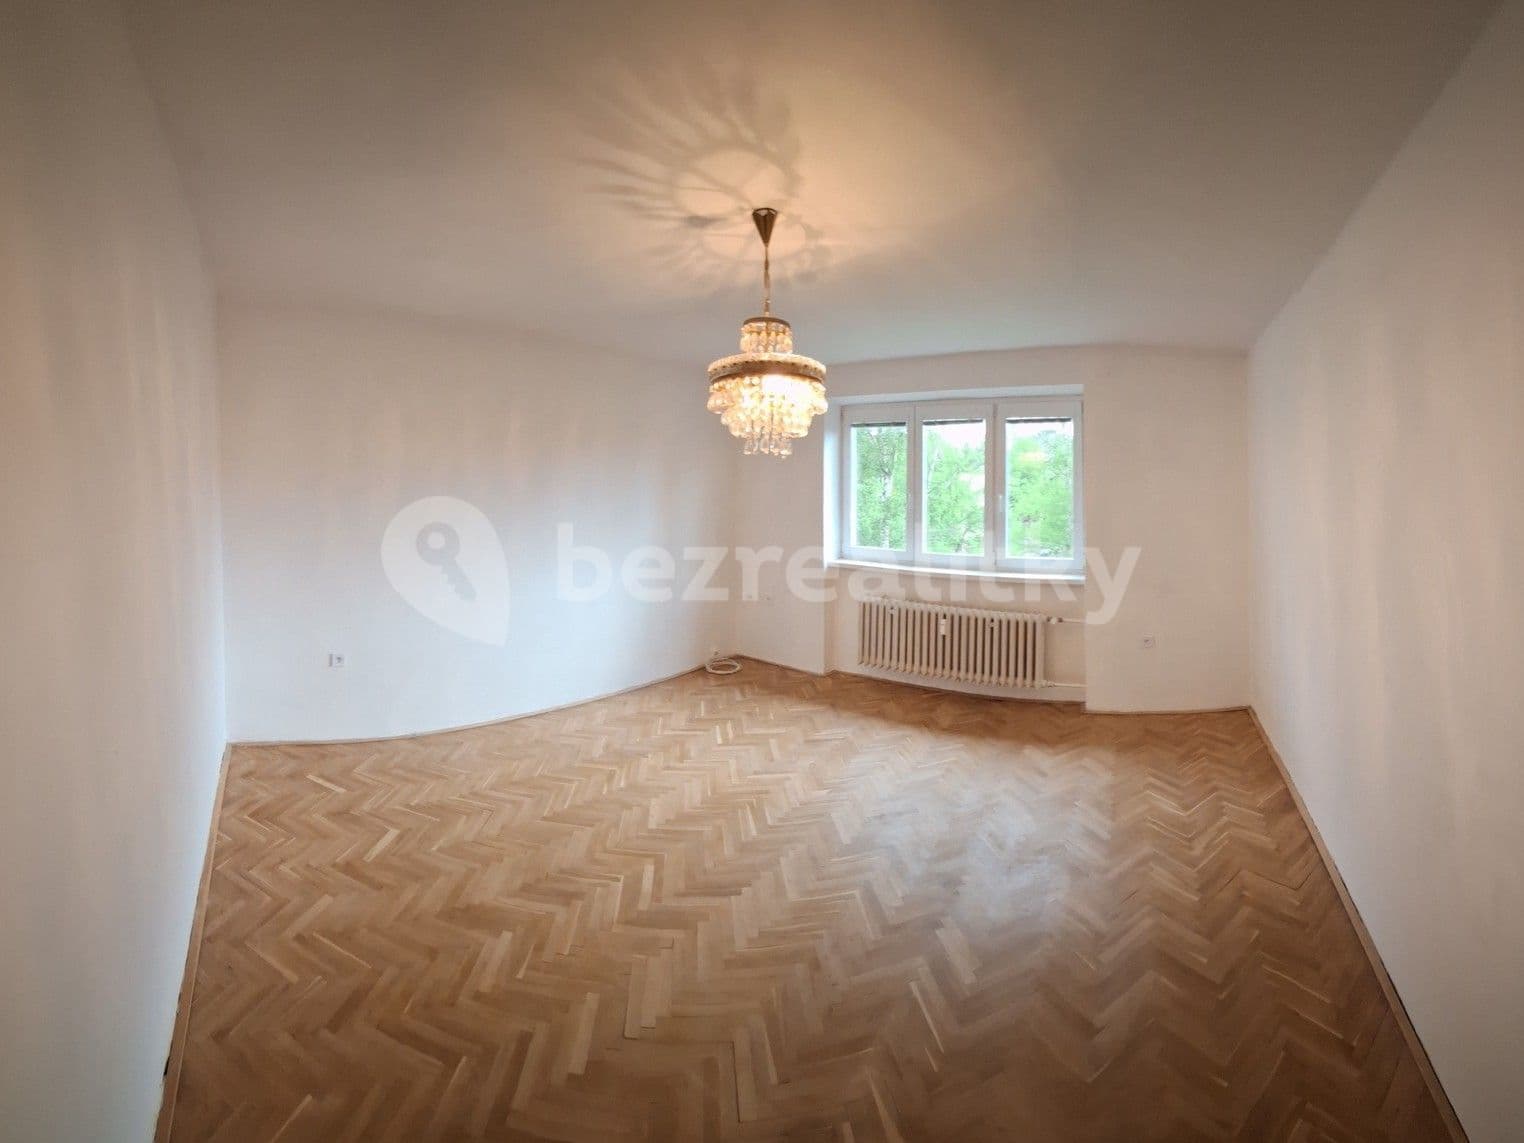 2 bedroom with open-plan kitchen flat for sale, 56 m², Mírová, Nové Město na Moravě, Vysočina Region